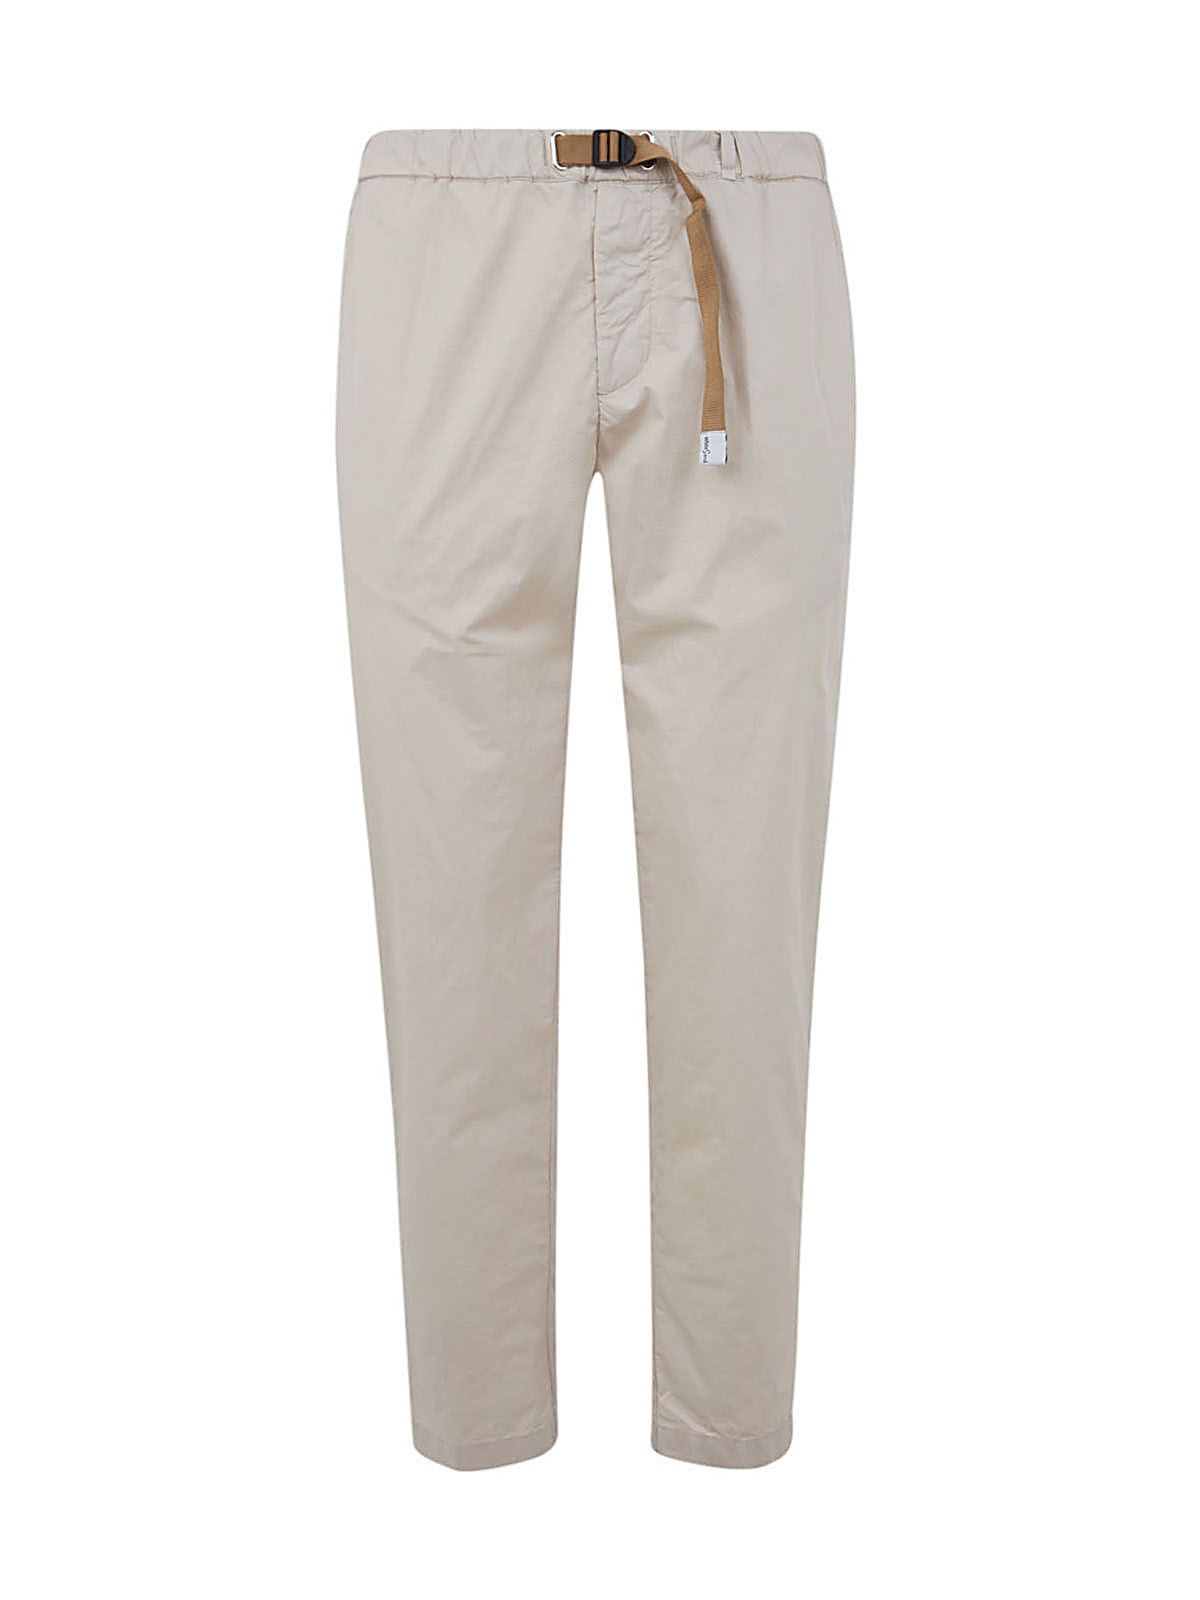 Shop White Sand Men's Long Cotton Trousers